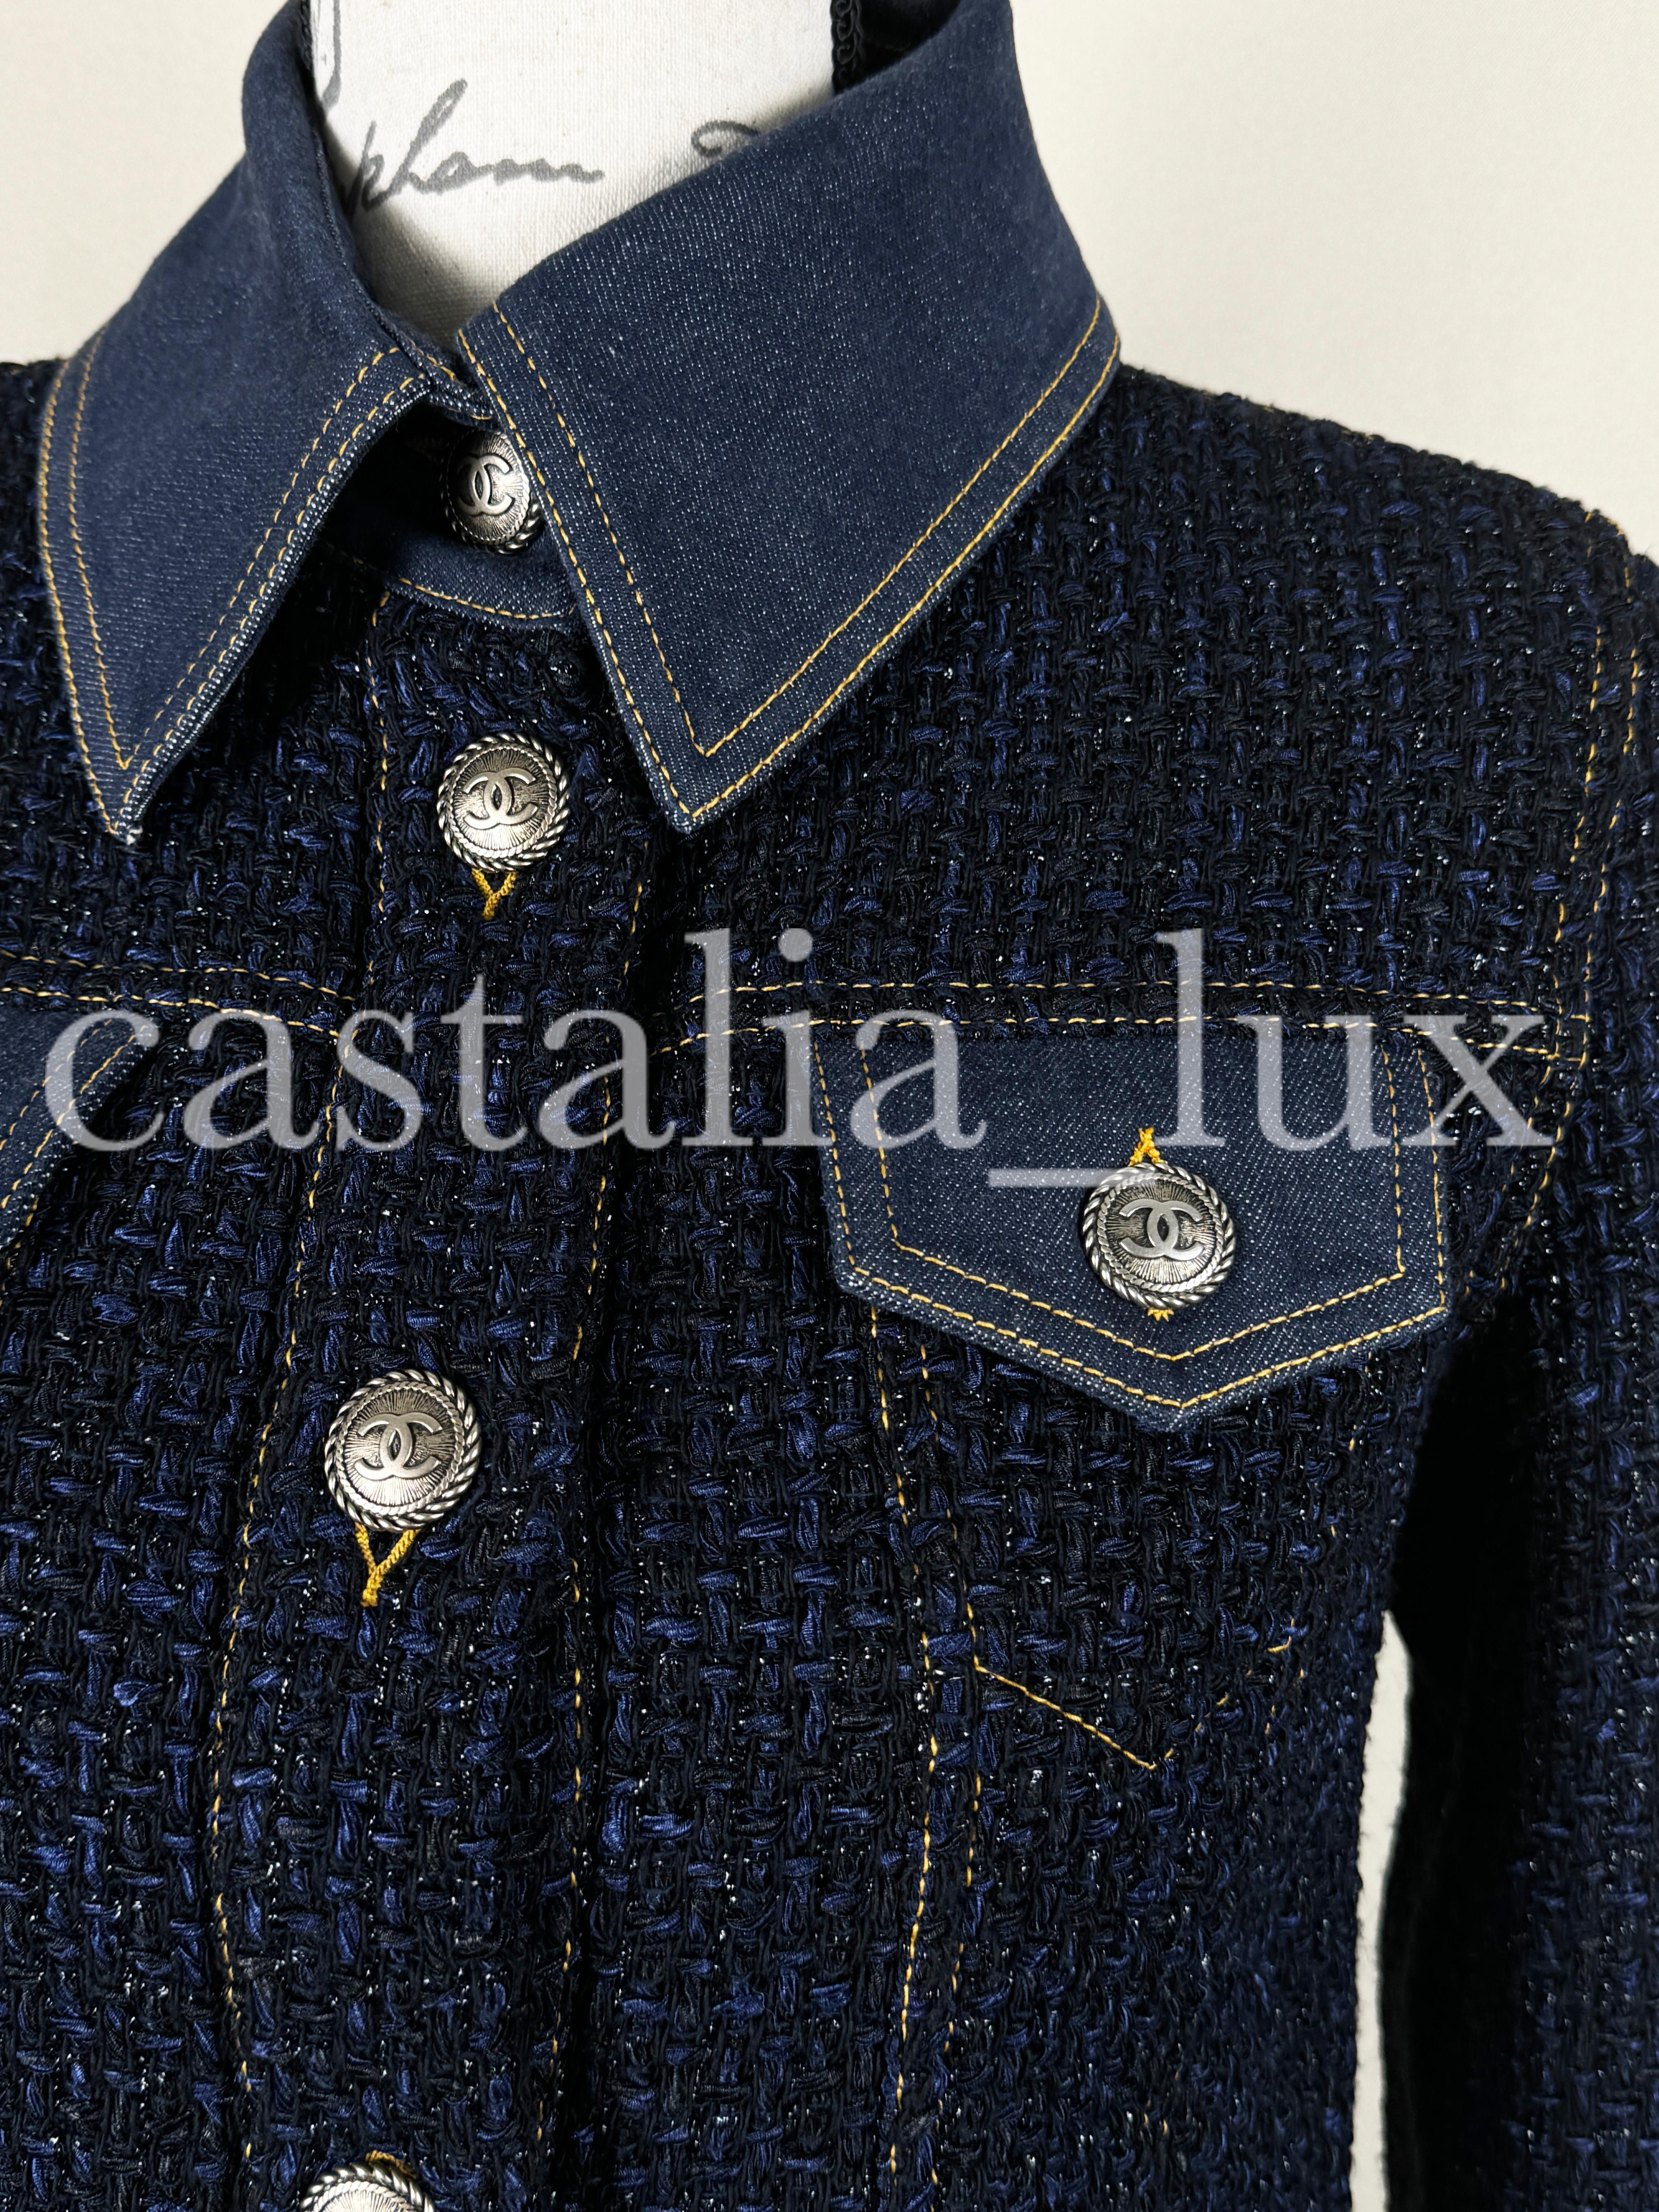 Chanel New Bestseller Lesage Tweed Jacket For Sale 5